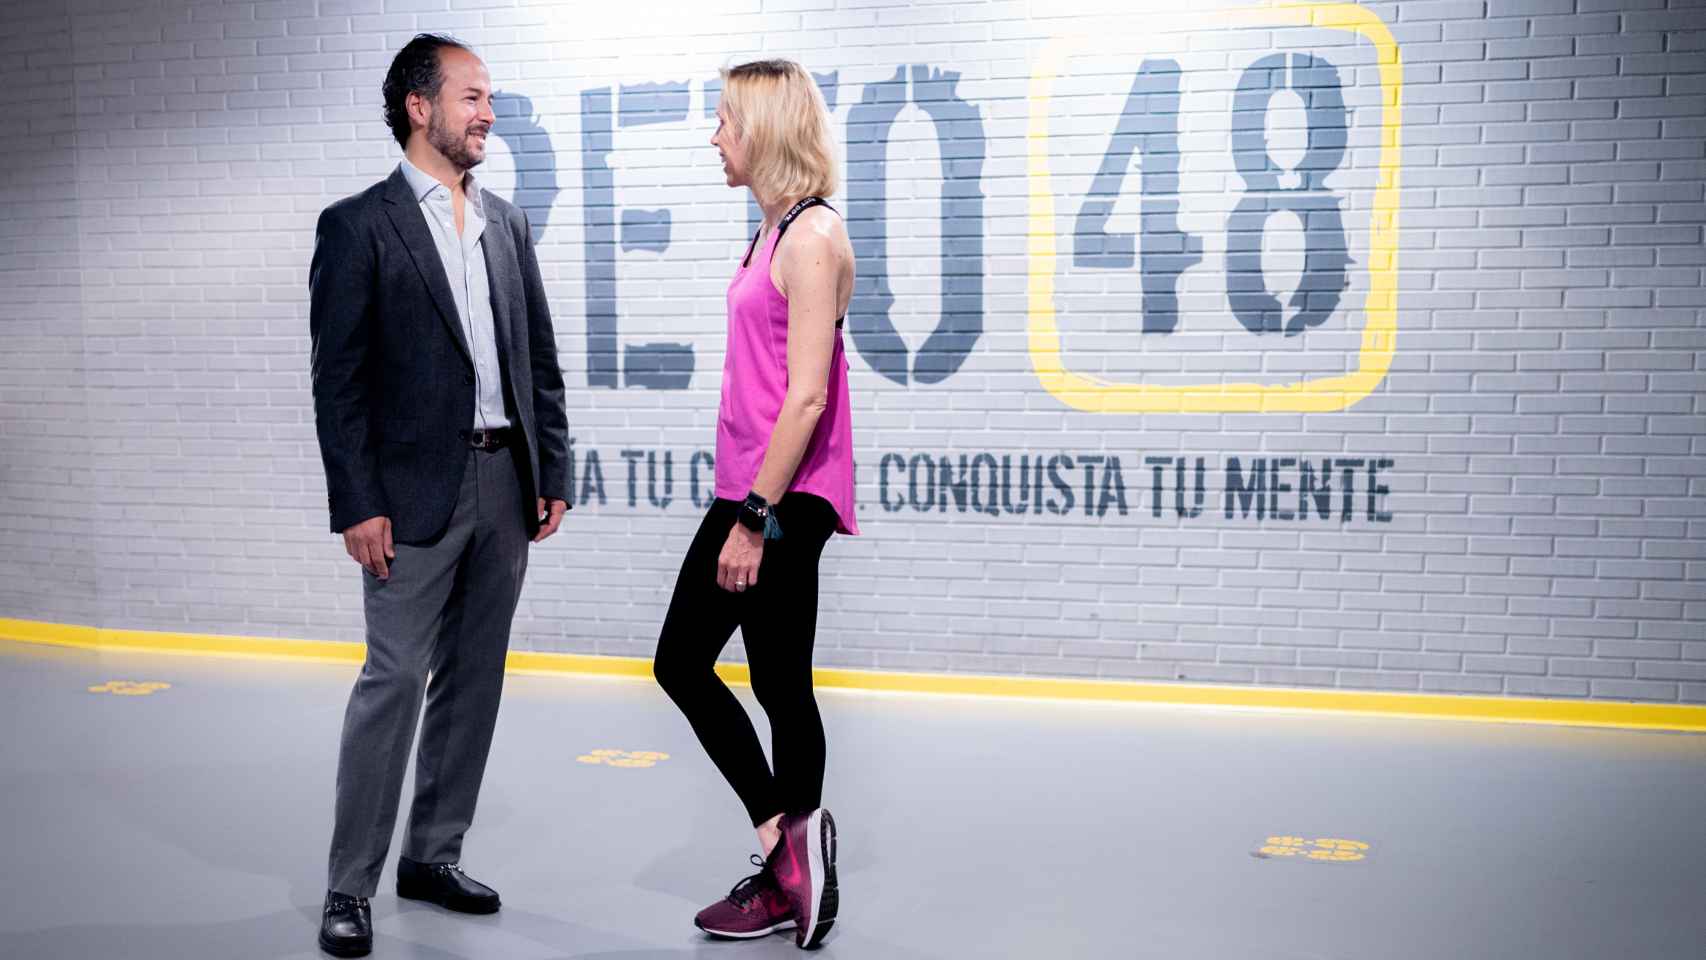 Sara Álvarez y Jorge Facha, CEOs y fundadores de Reto 48, hablando.